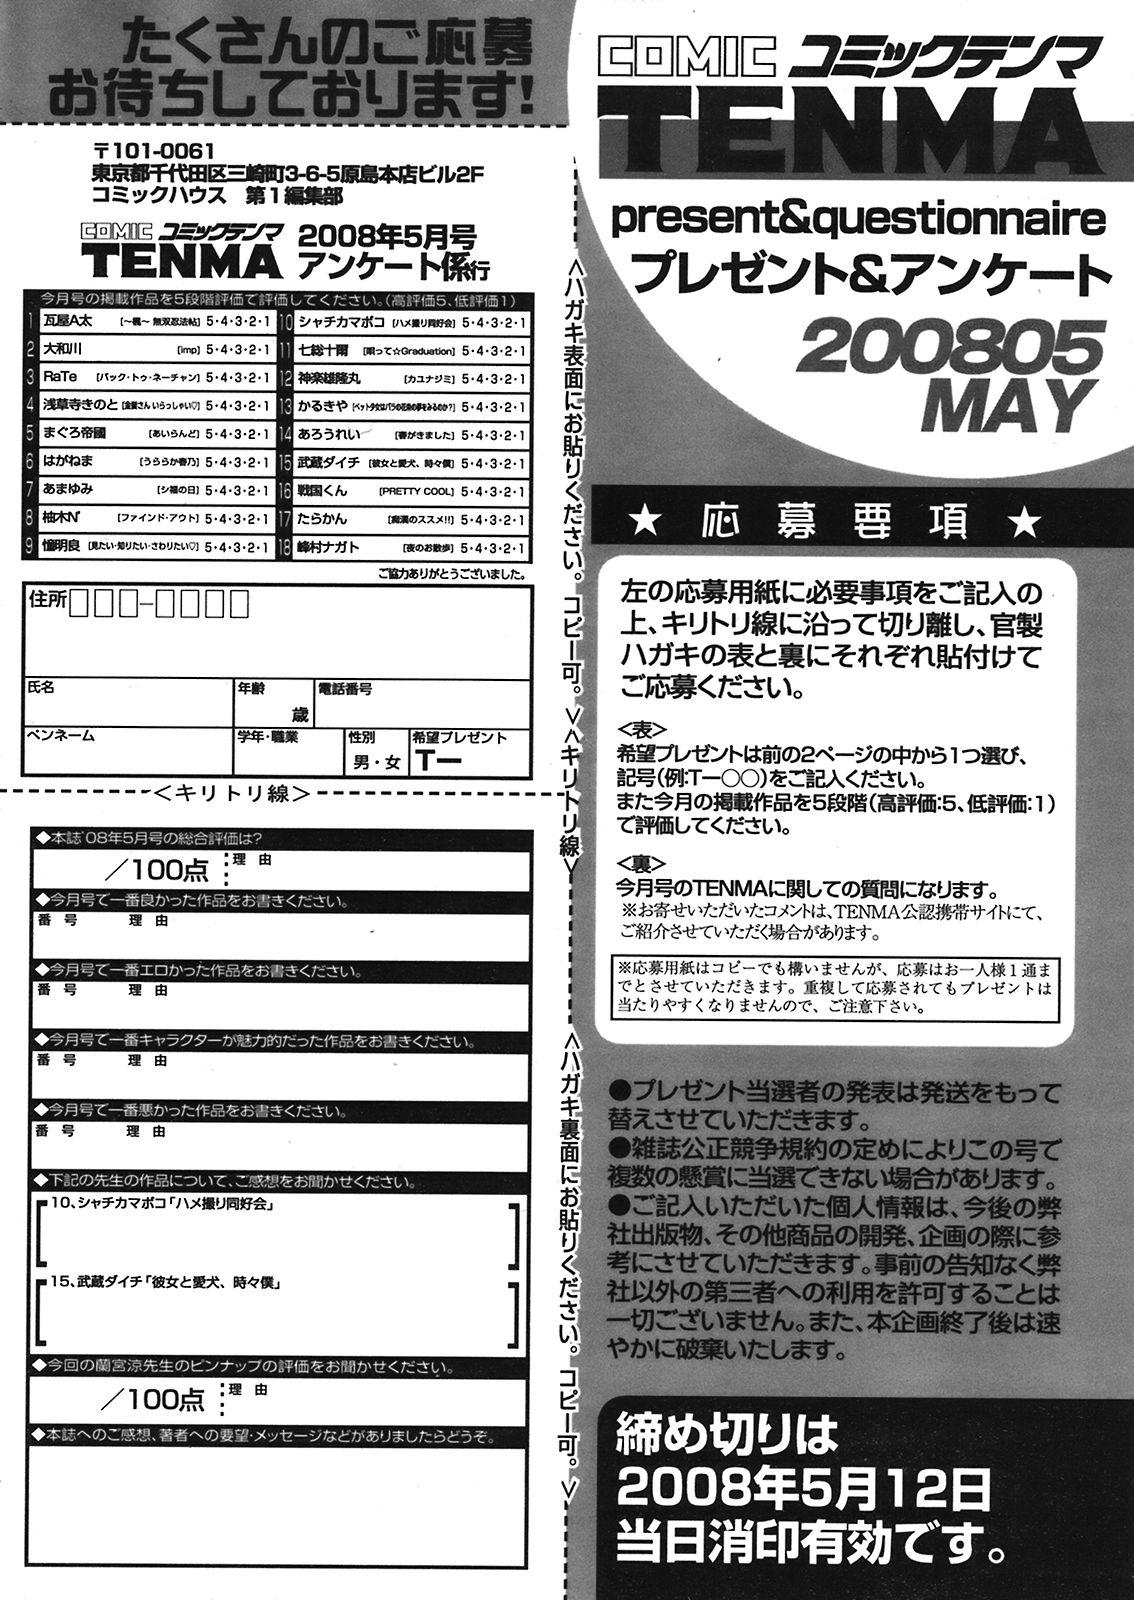 COMIC TENMA 2008-05 434